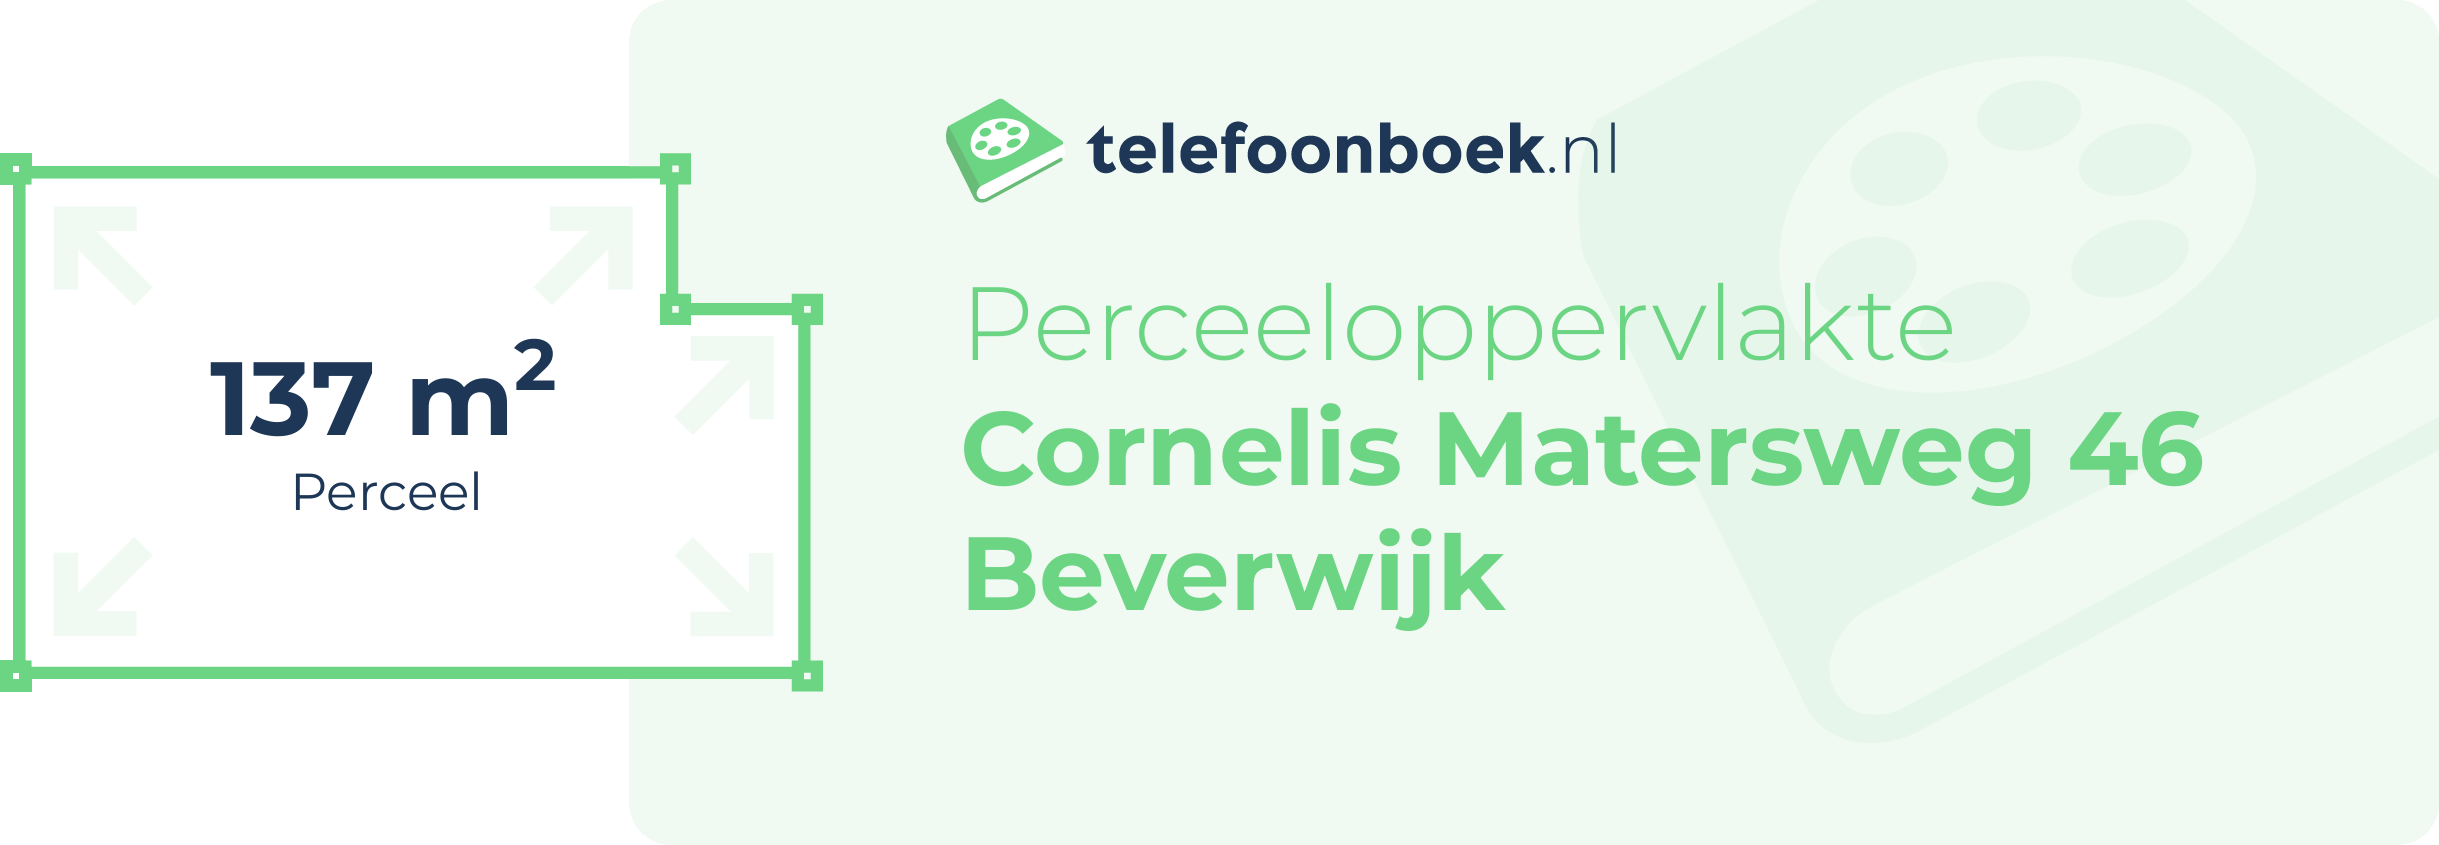 Perceeloppervlakte Cornelis Matersweg 46 Beverwijk